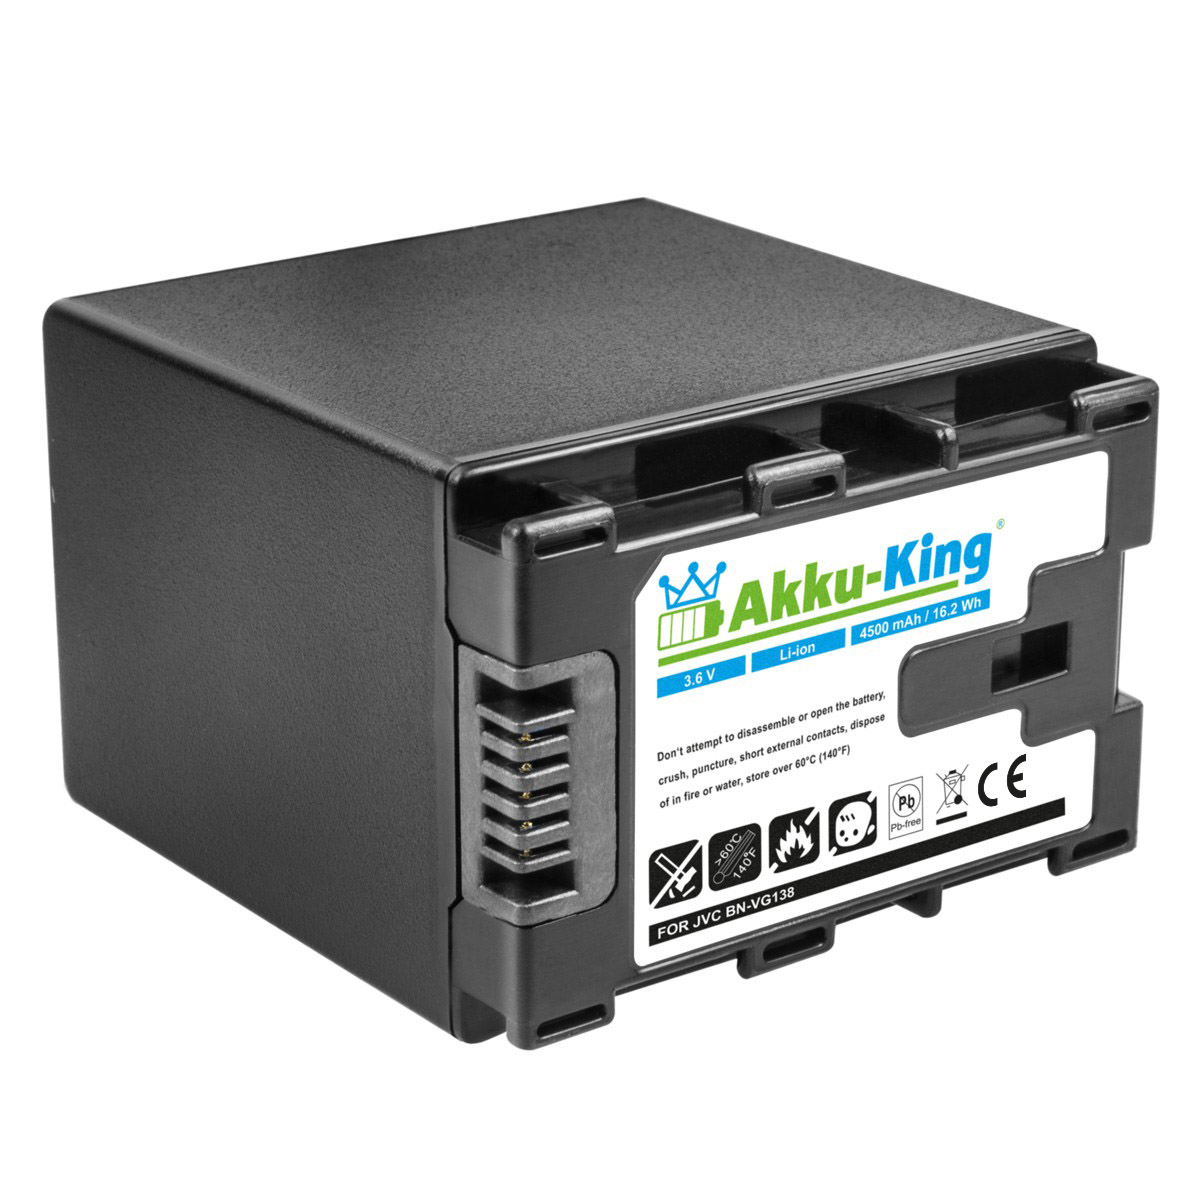 AKKU-KING Akku kompatibel mit Li-Ion BN-VG138 Kamera-Akku, Volt, JVC 3.6 4500mAh